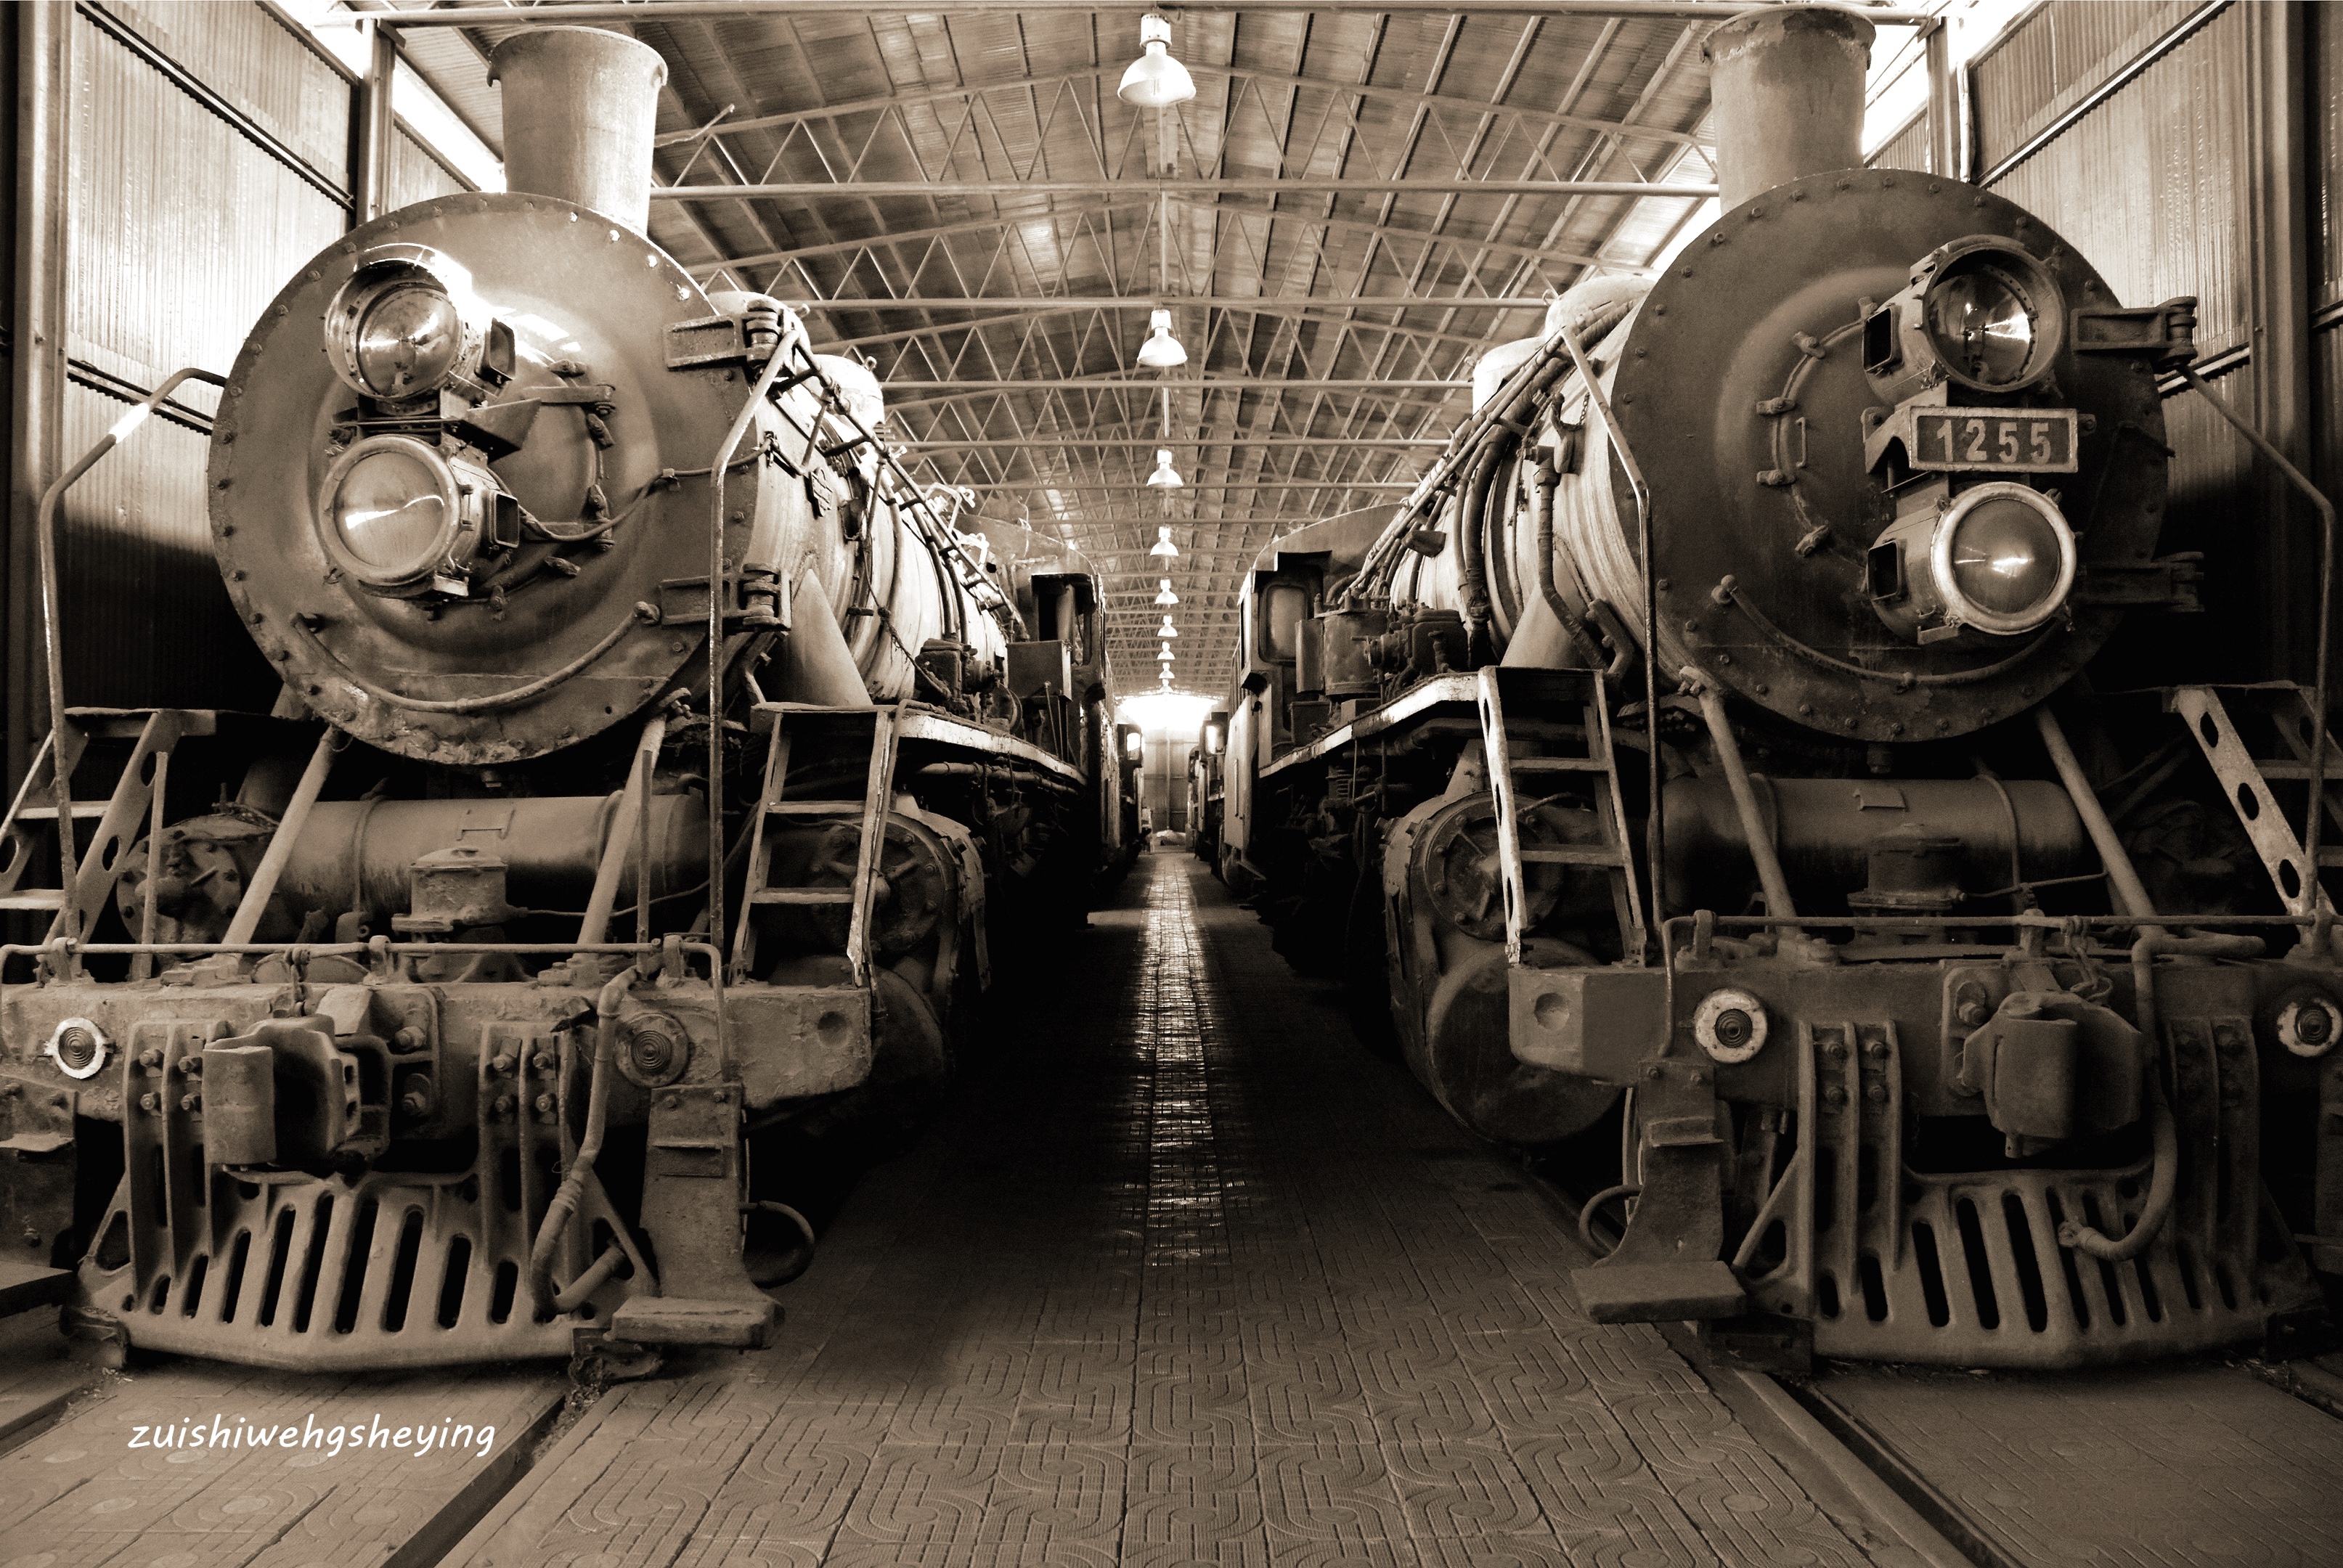 设计制造了世界第一台具有实用价值的5吨重的"火箭"号蒸汽机车,并于